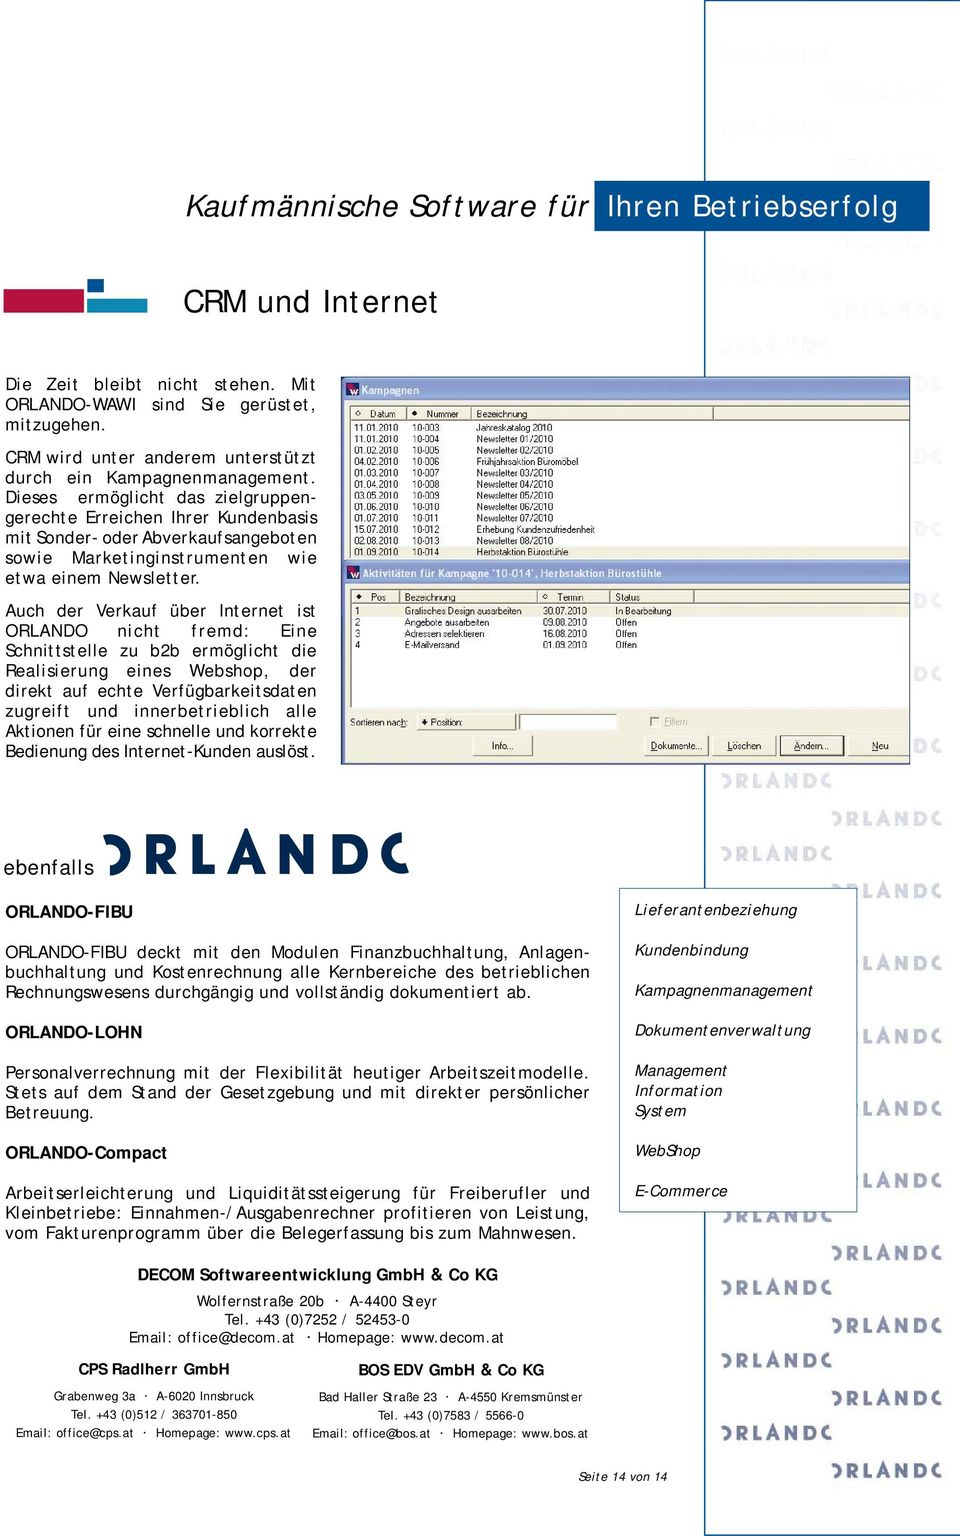 Auch der Verkauf über Internet ist ORLANDO nicht fremd: Eine Schnittstelle zu b2b ermöglicht die Realisierung eines Webshop, der direkt auf echte Verfügbarkeitsdaten zugreift und innerbetrieblich